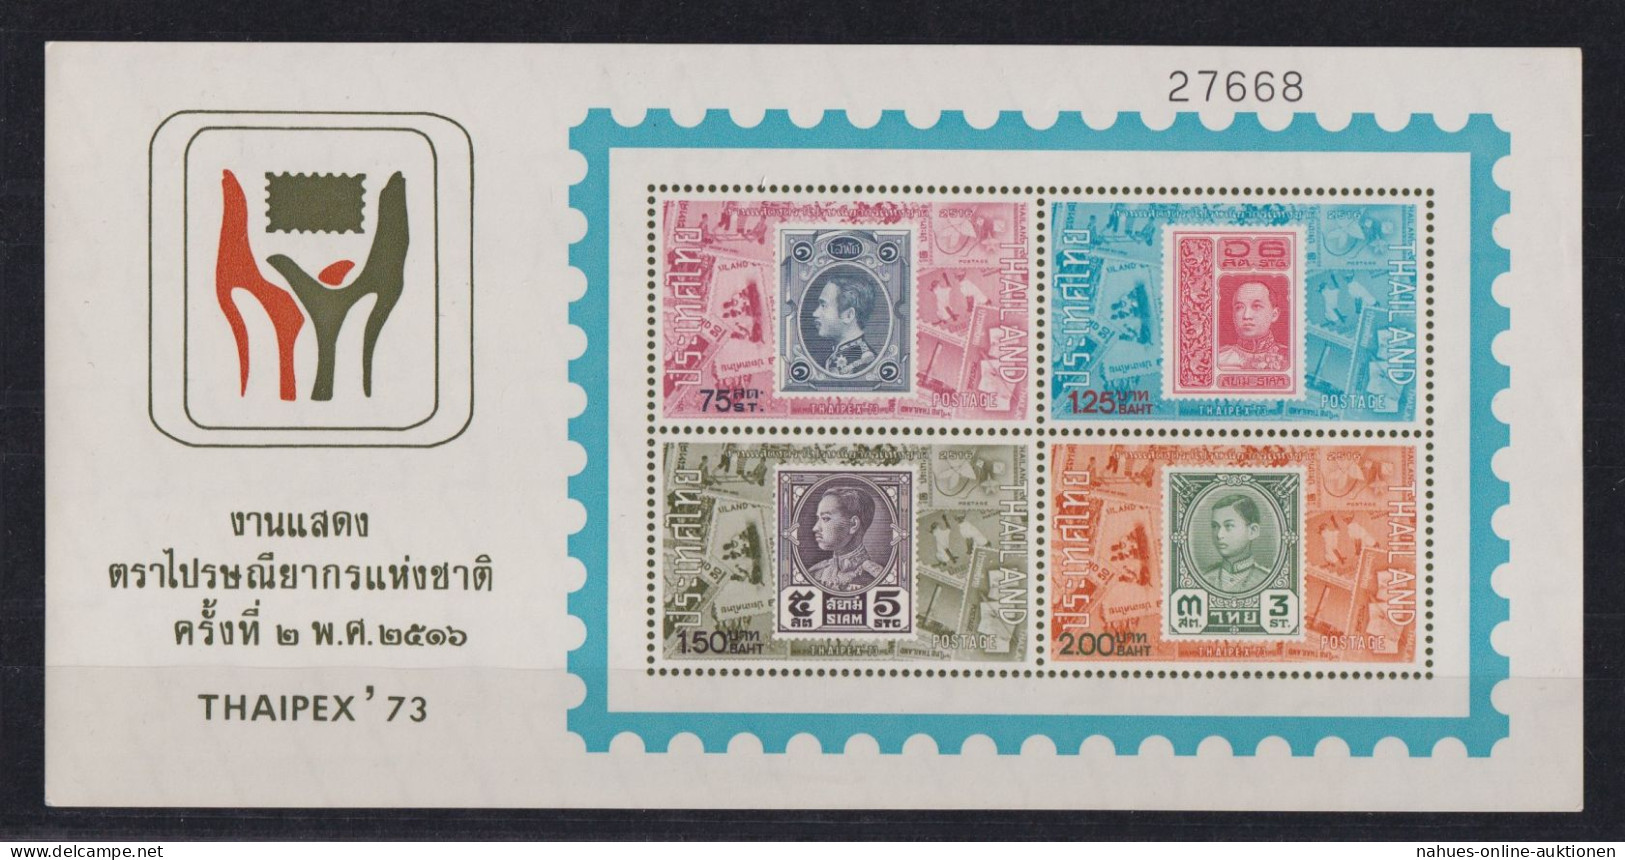 Thailand Block 2 Philatelie Thaipex 73 Briefmarken Ausstellung Luxus Postfrisch - Thaïlande